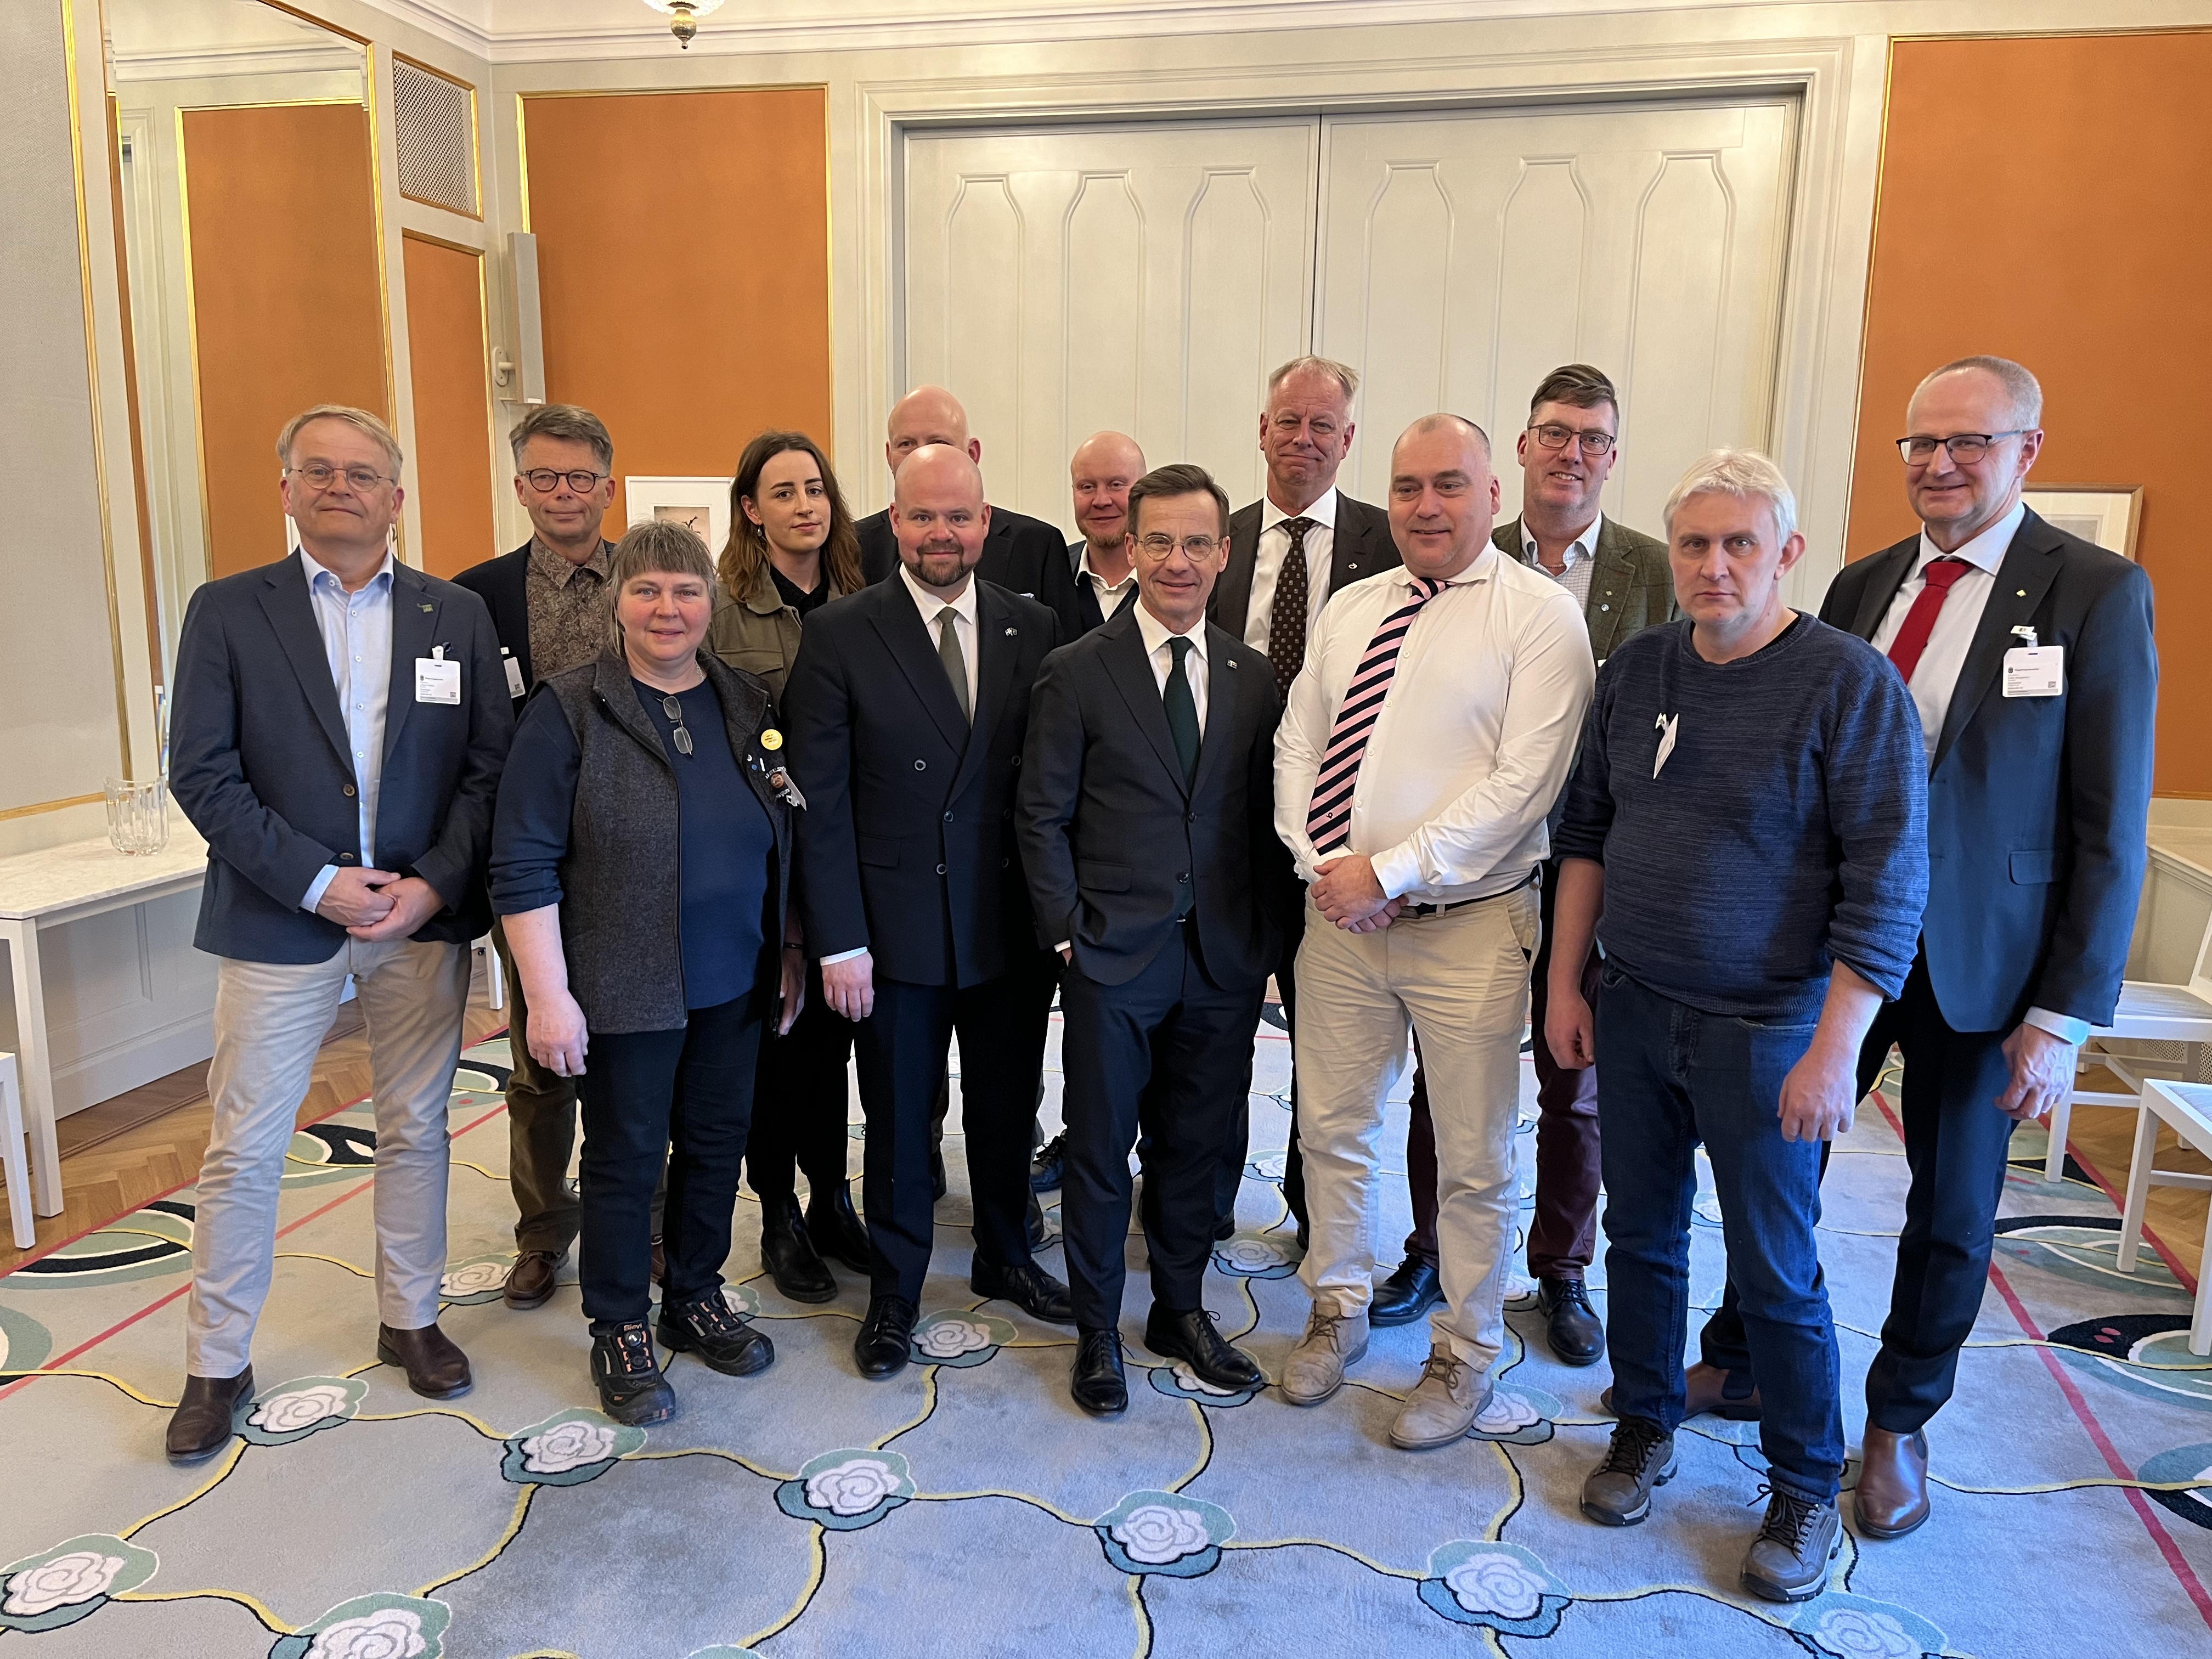 LRF medverkade tillsammans med andra branschorganisationer inom lantbrukssektorn på ett dialogmöte med statsminister Ulf Kristersson och landsbygdsminister Peter Kullgren.